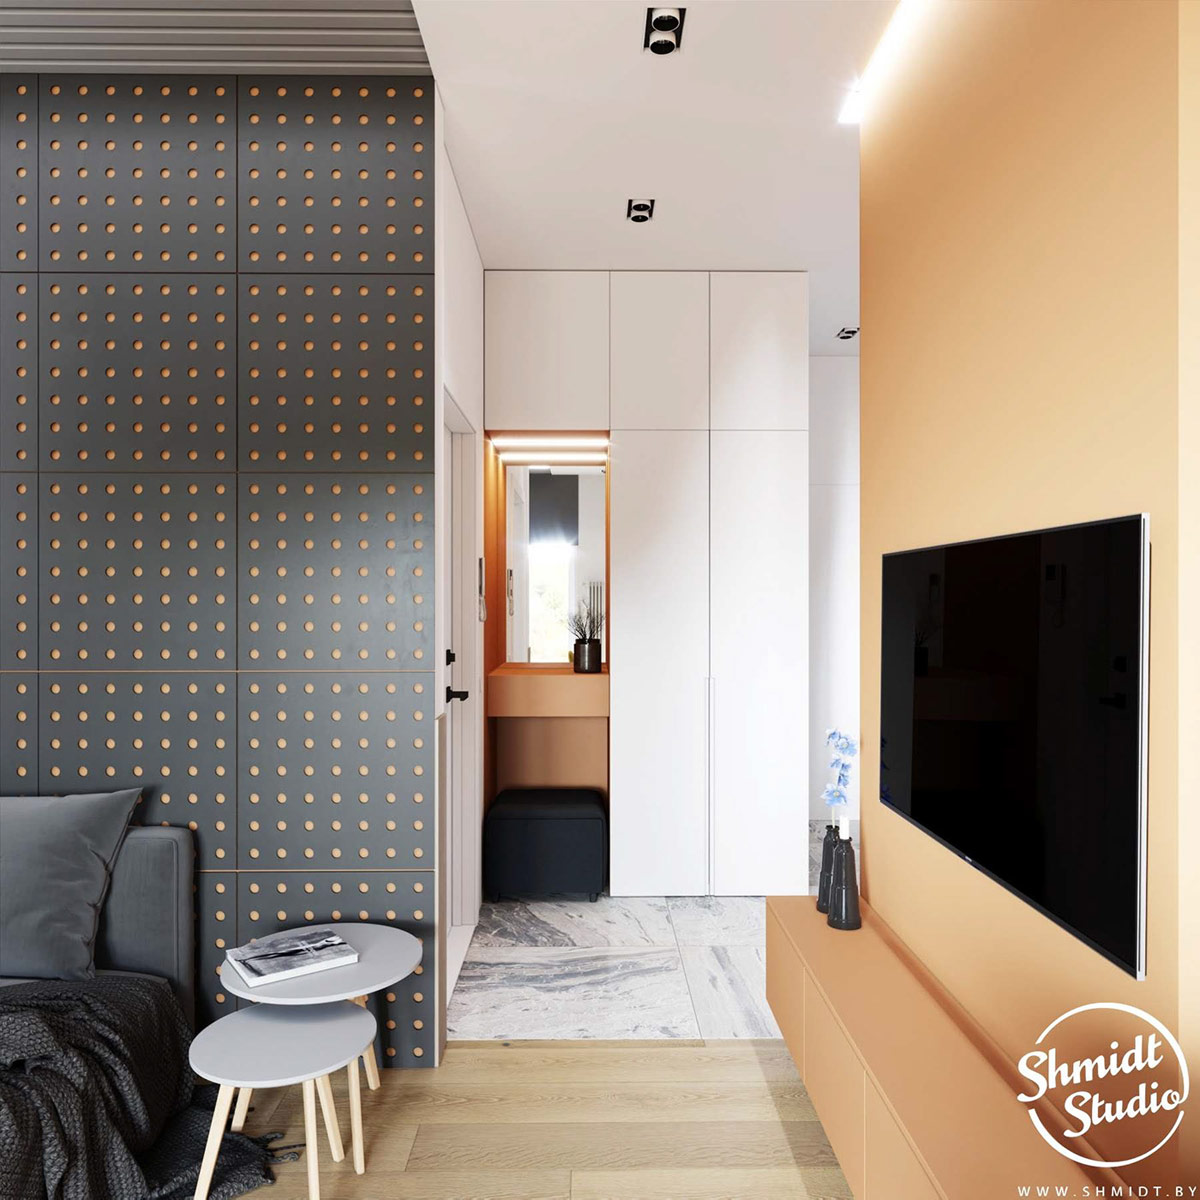 Bức tường treo tivi được sơn màu cam tươi sáng. Từ góc nhìn này bạn sẽ thấy sự liên kết màu sắc từ góc nhỏ ở lối vào căn hộ - nơi bố trí gương soi và ghế nghỉ - cũng sơn màu tương tự. Bảng Pegboard màu đen tạo sự tương phản và chiều sâu cho phòng khách.